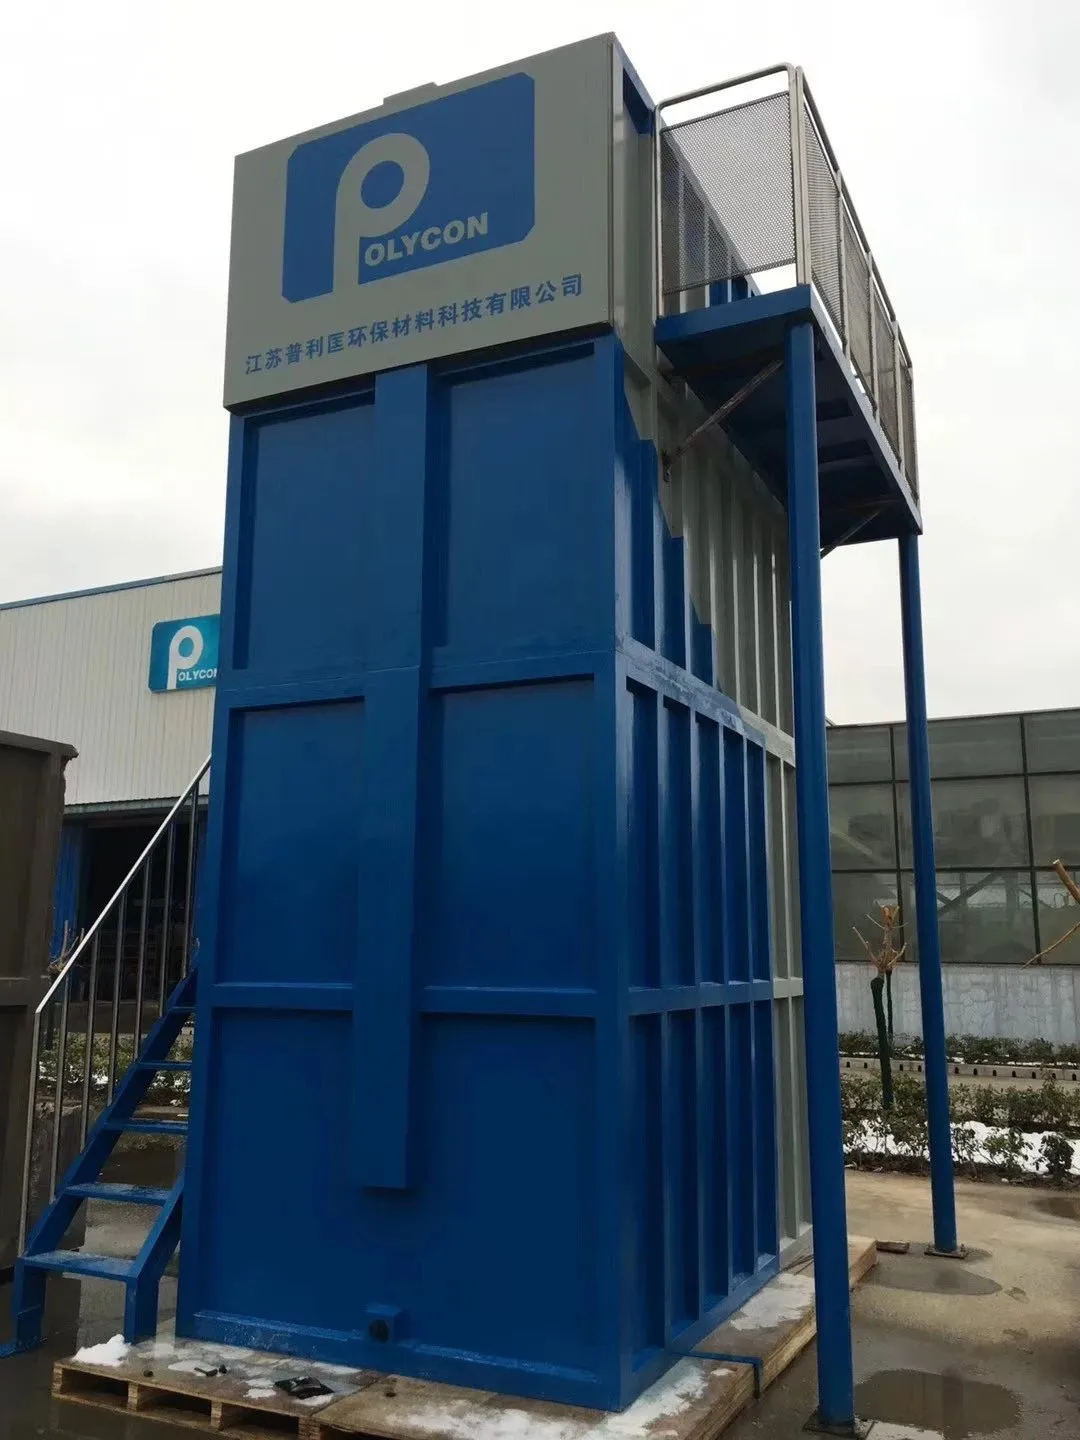 软硬结合治污水：普利匡农村污水处理设施远程自动监控系统